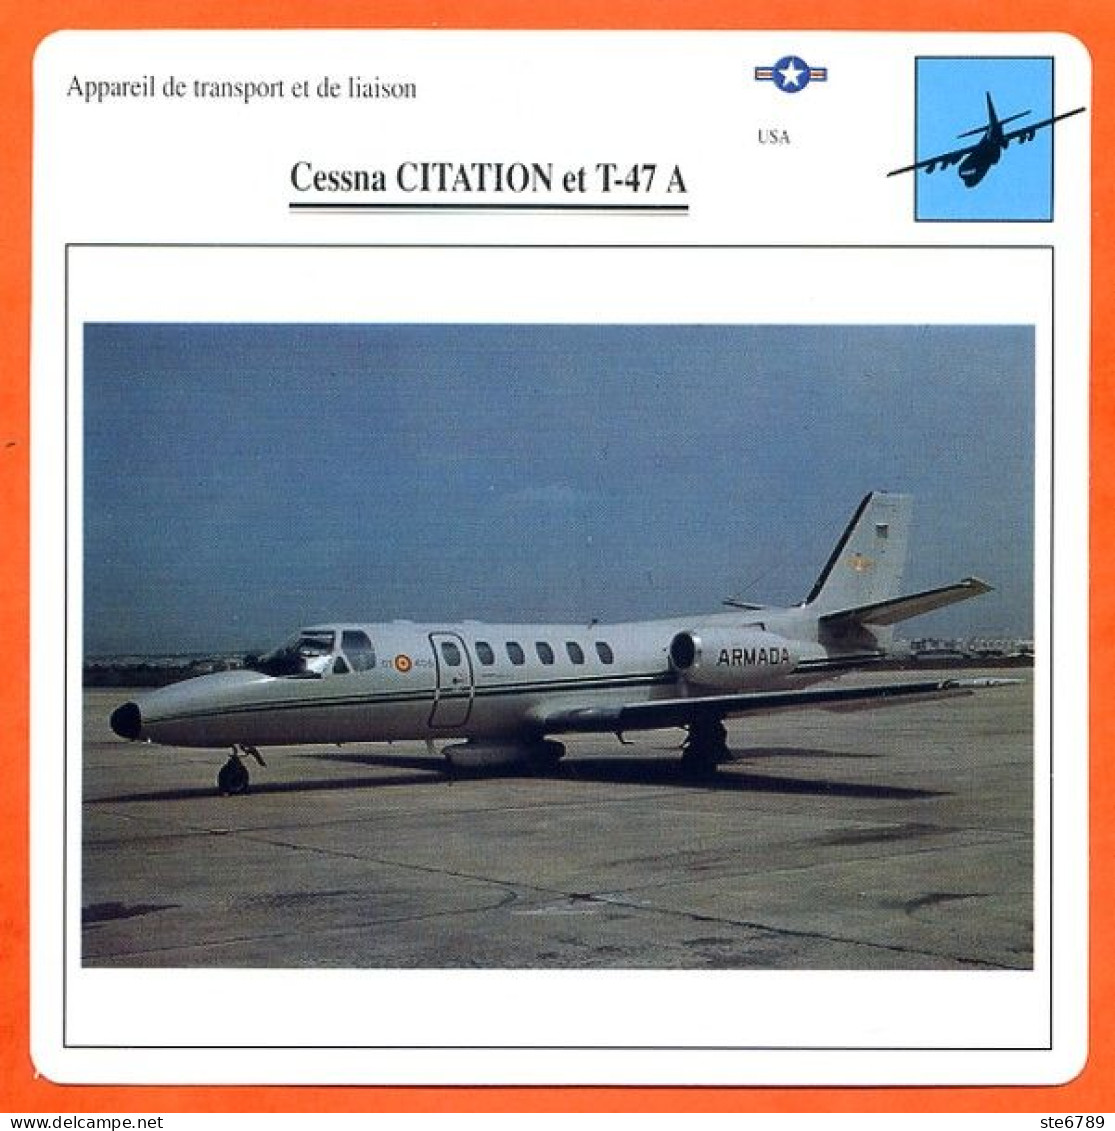 Fiche Aviation CESSNA CITATION Et T 47 A / Avion Transport Et Liaison USA Avions - Aerei